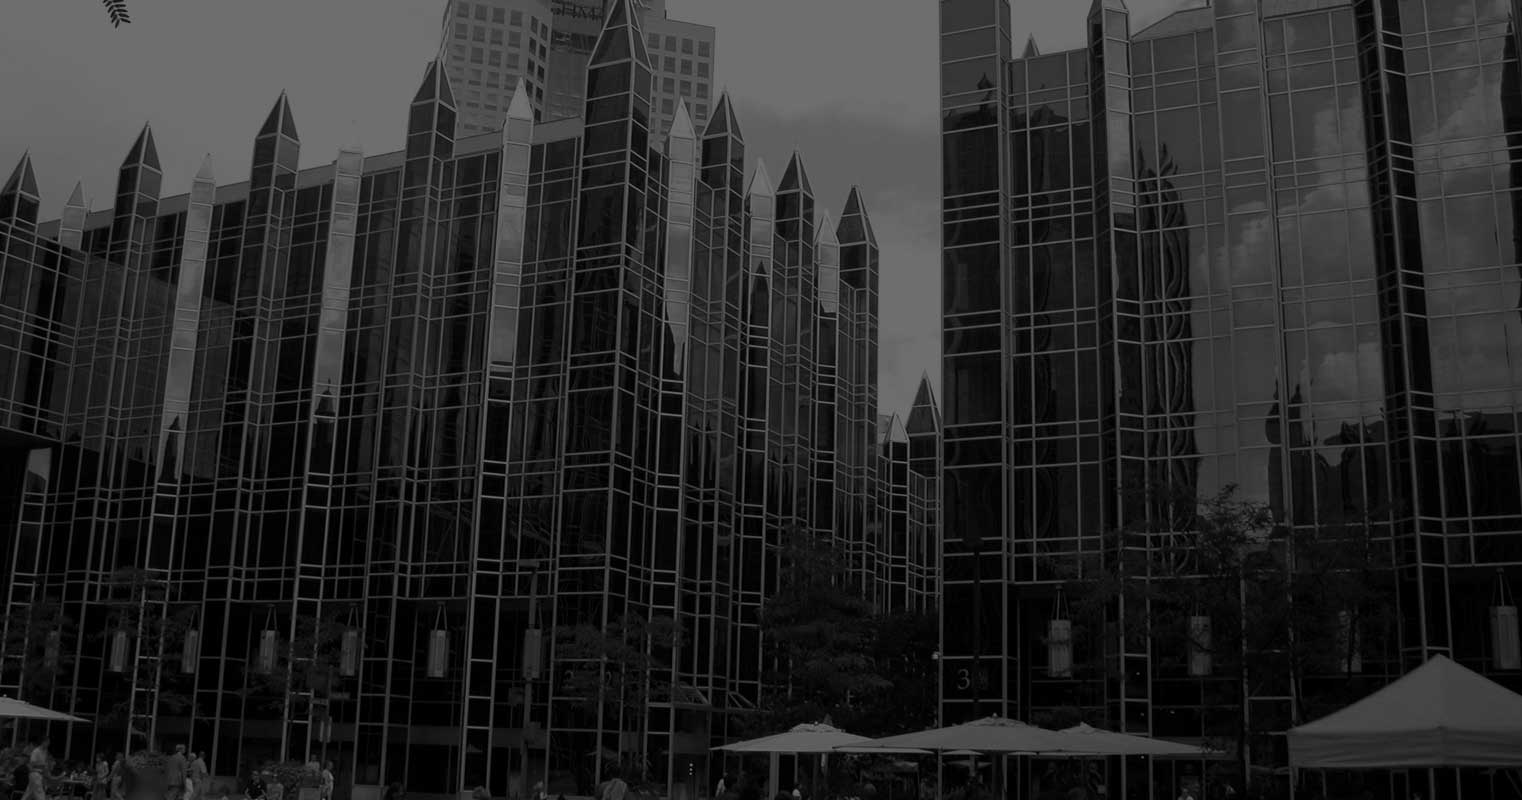 Gotham City Background